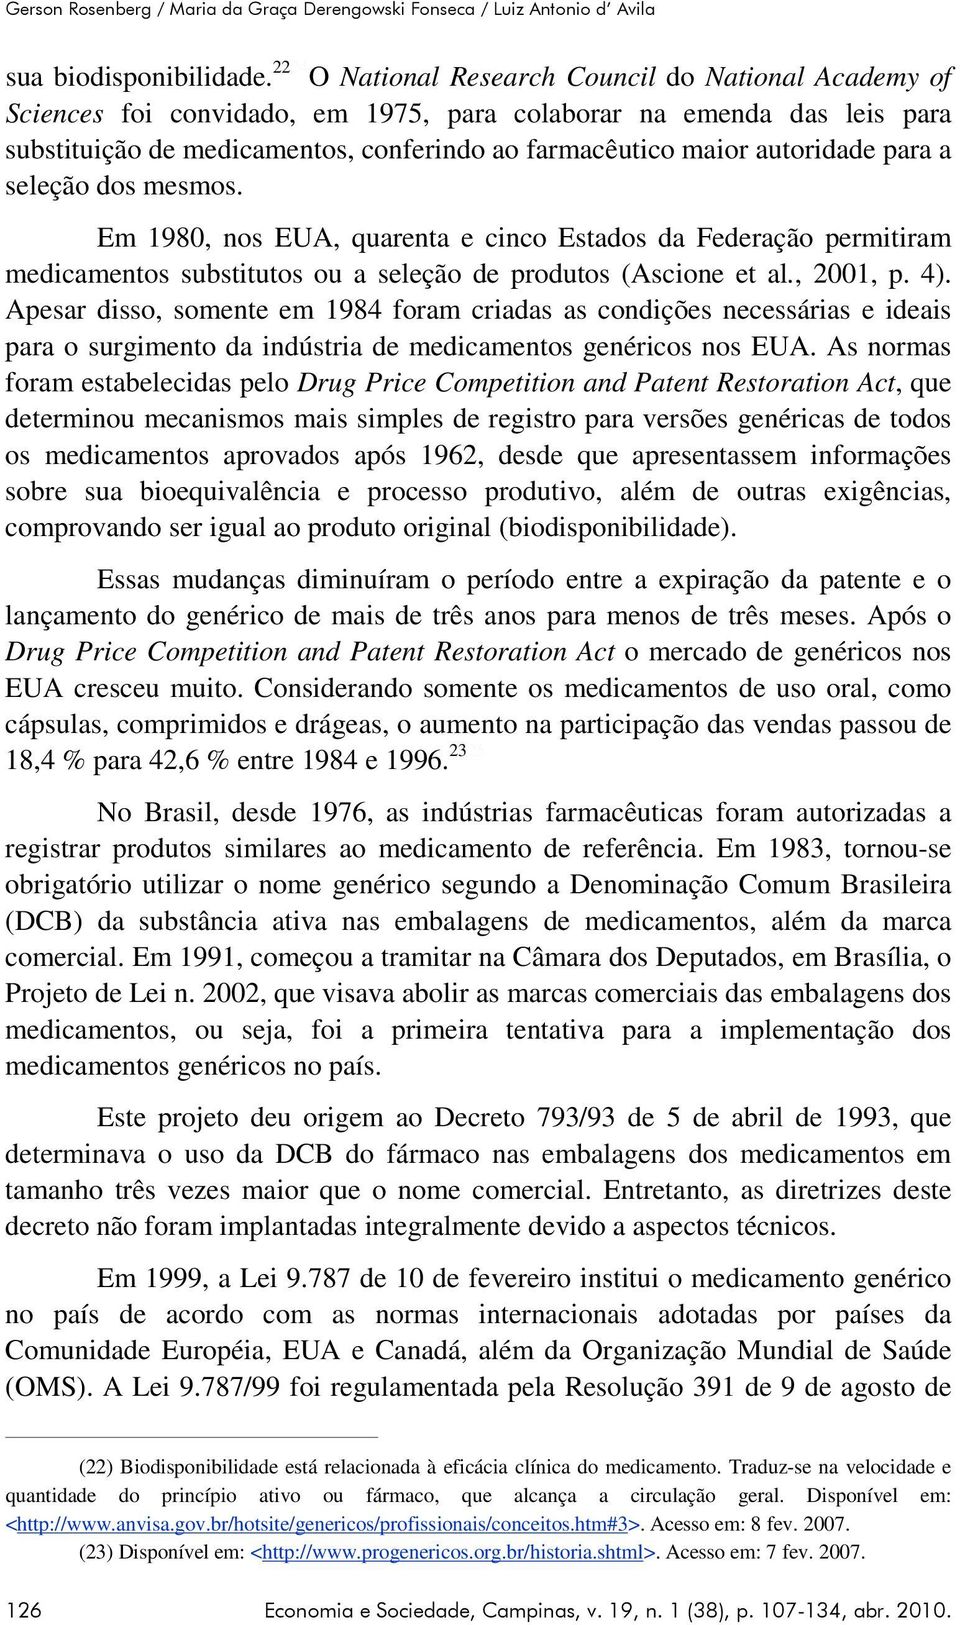 autoridade para a seleção dos mesmos. Em 1980, nos EUA, quarenta e cinco Estados da Federação permitiram medicamentos substitutos ou a seleção de produtos (Ascione et al., 2001, p. 4).